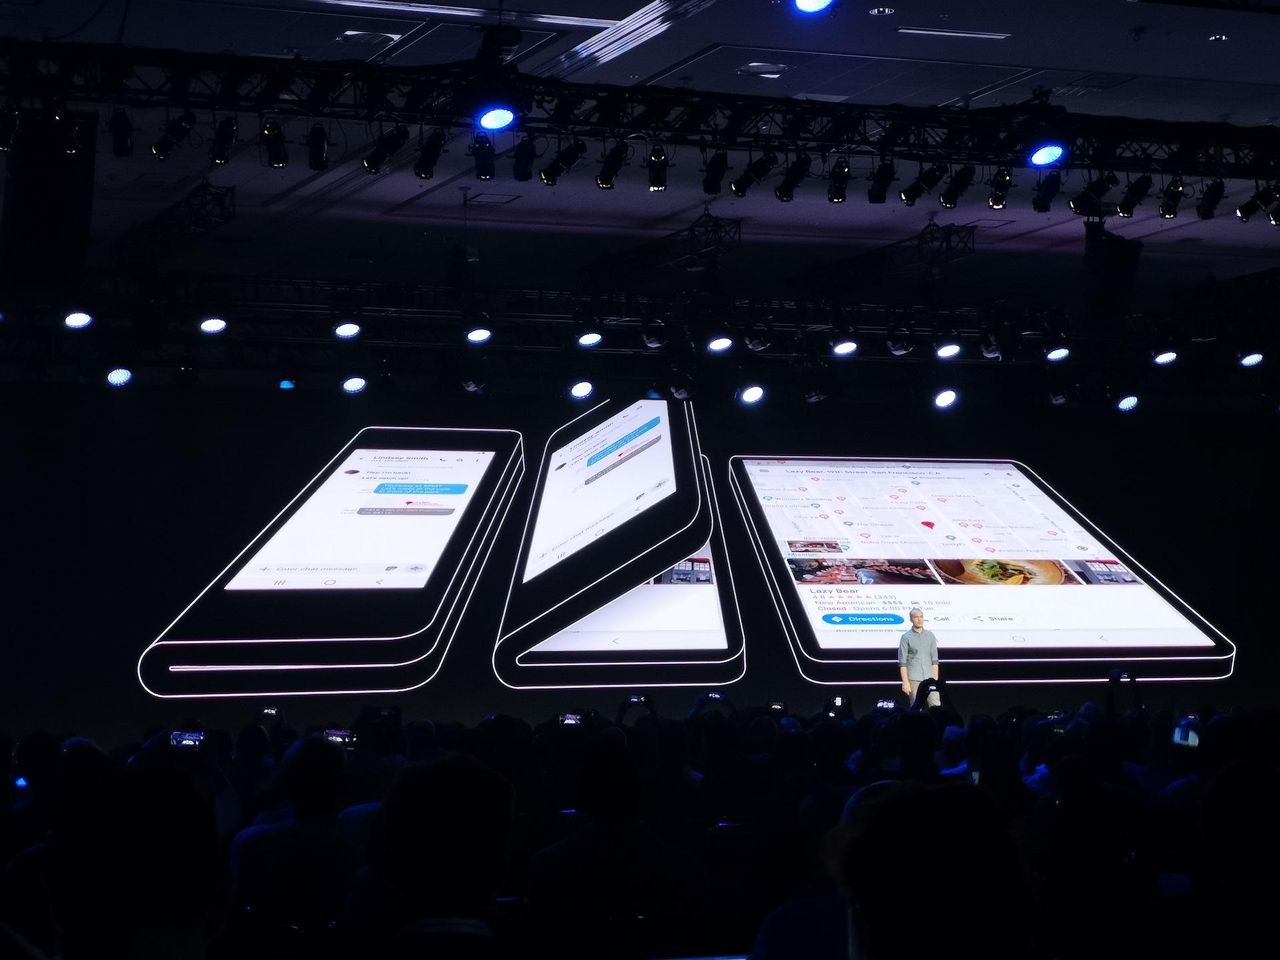 Jak duży będzie składany smartfon Samsunga?